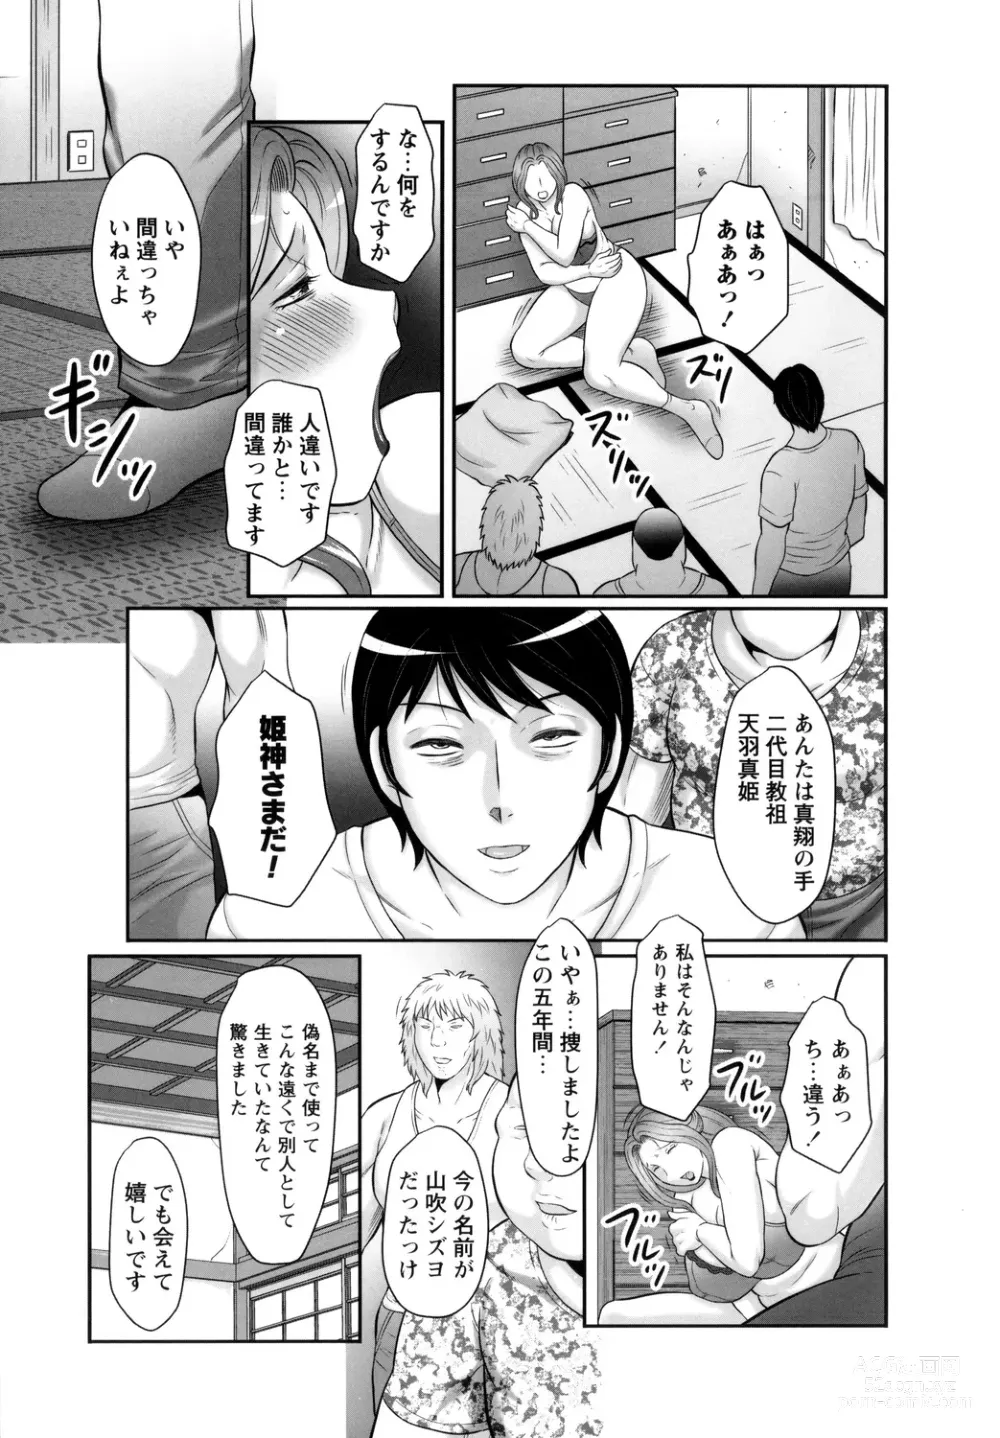 Page 13 of manga Midaragami Seinaru Jukujo ga Mesubuta Ika no Nanika ni Ochiru made